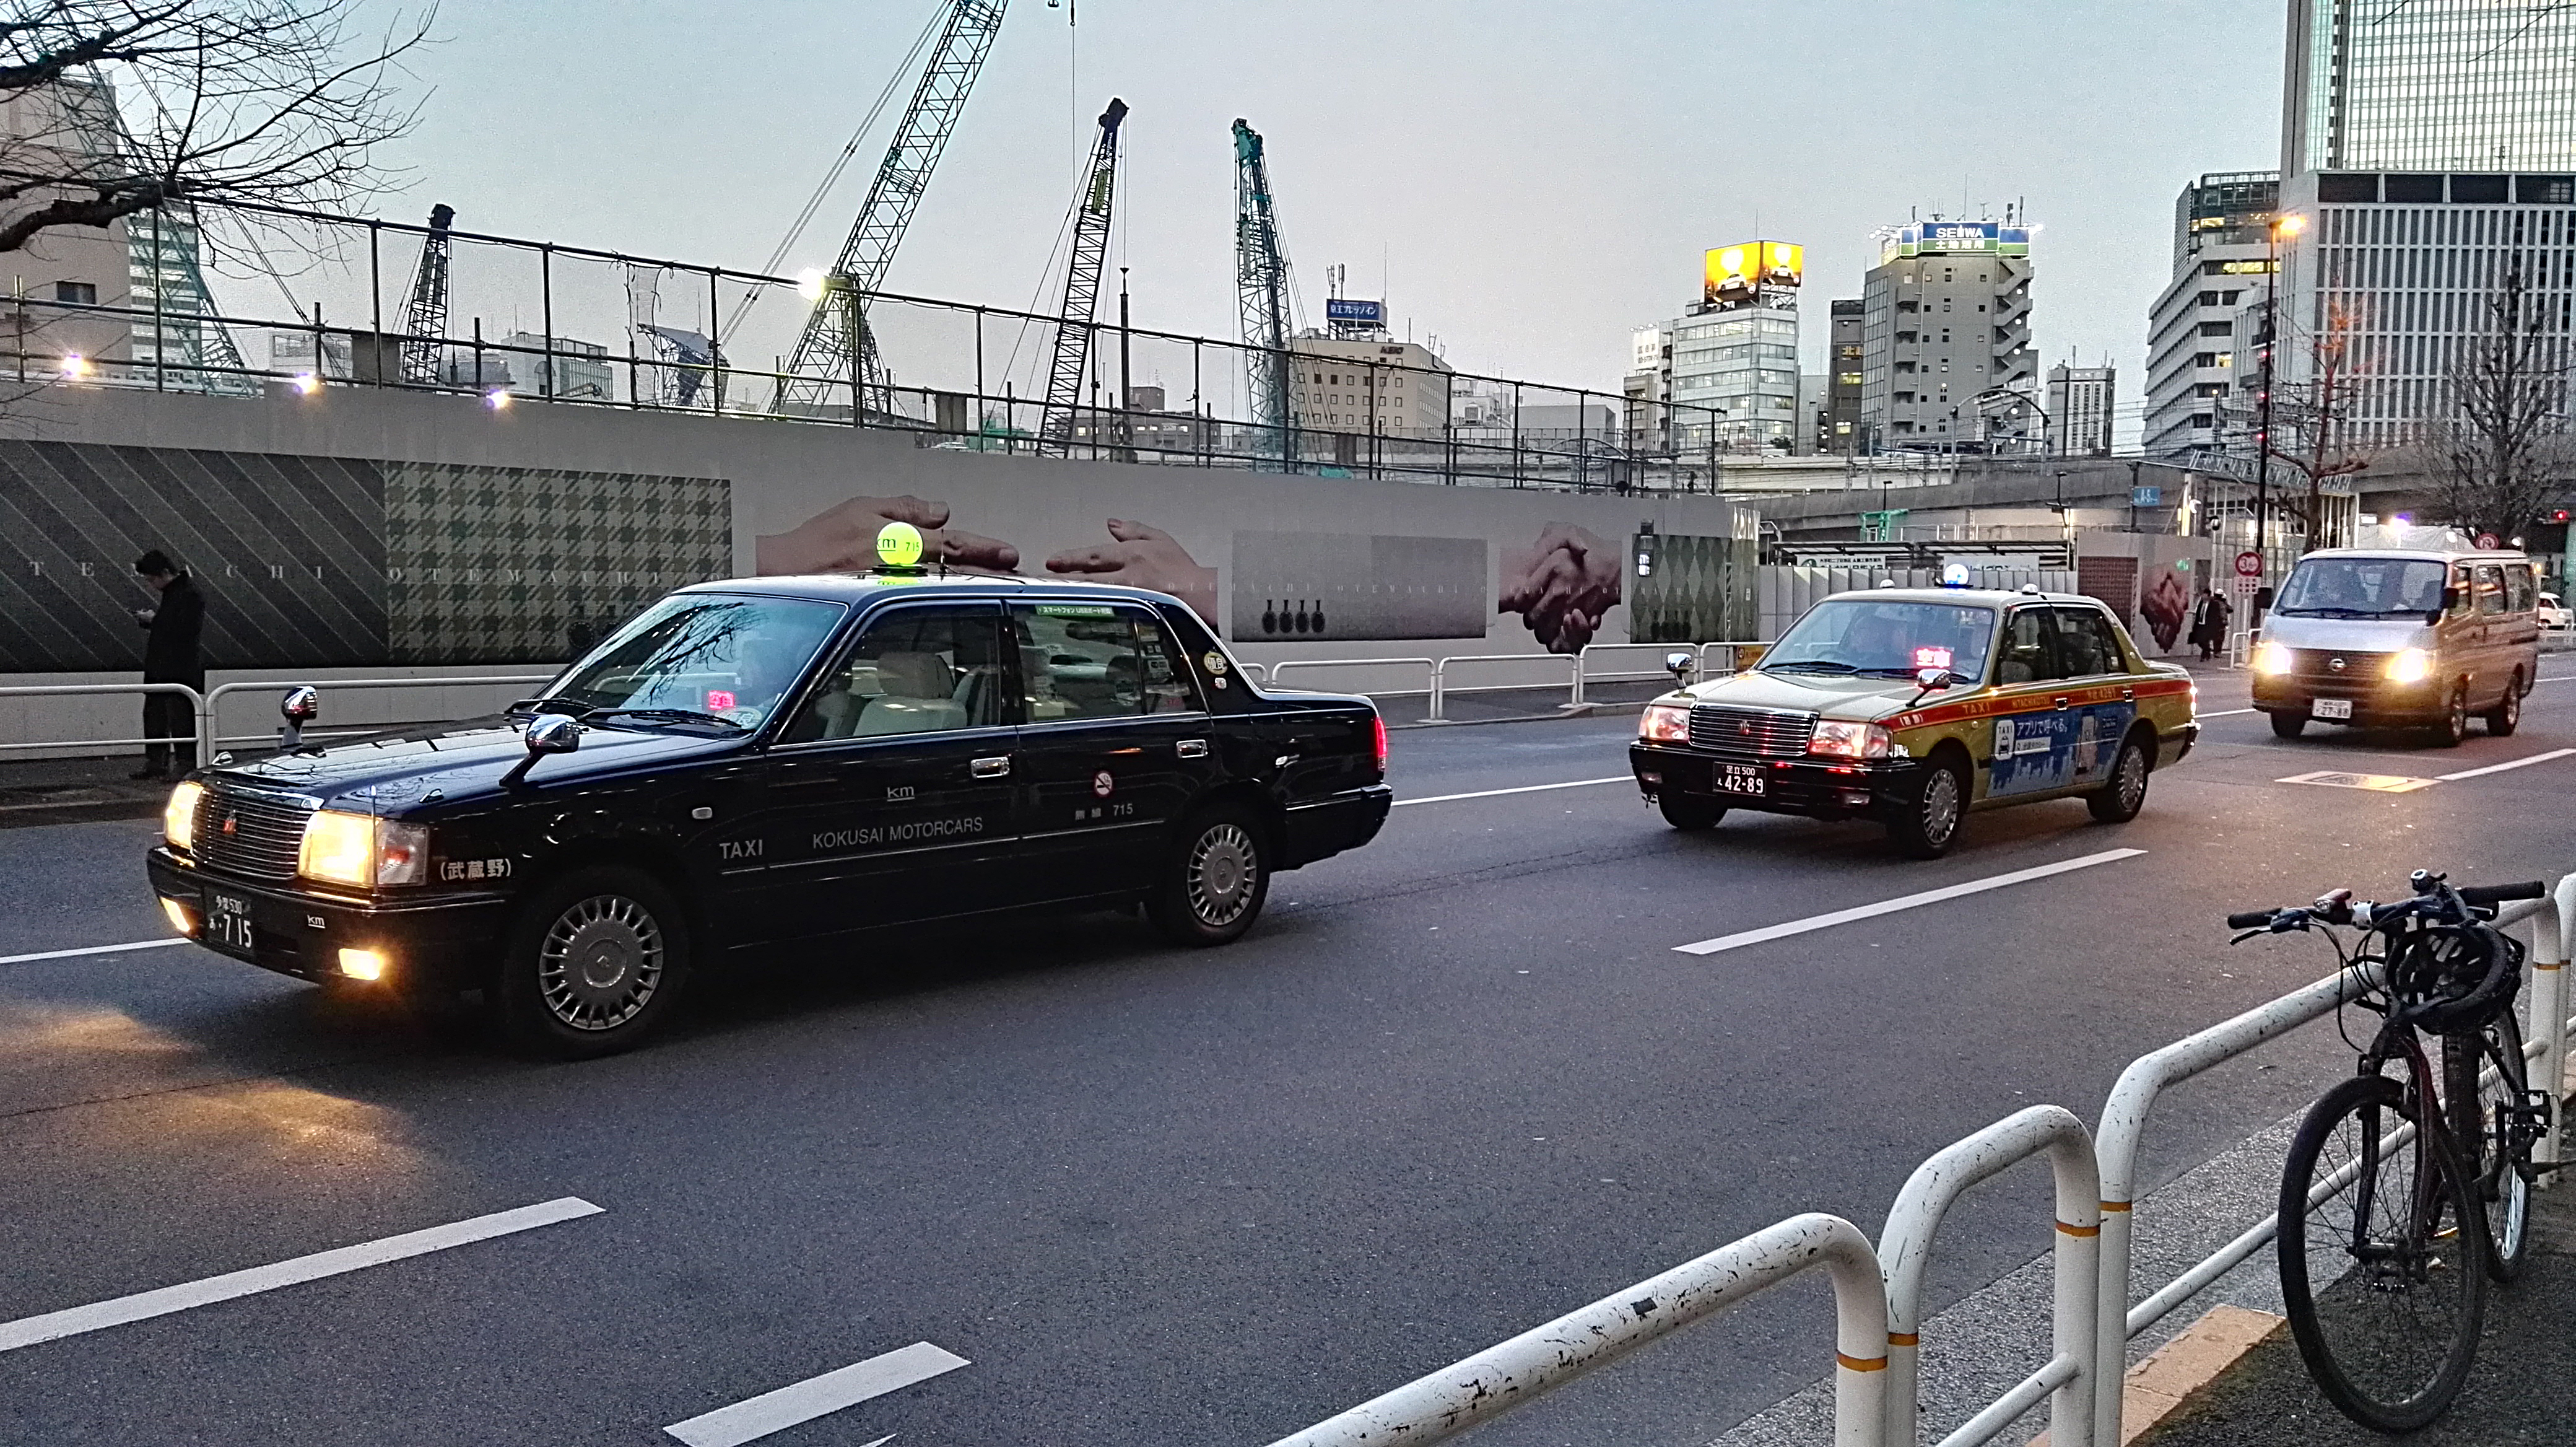 Mocno tradycyjne taksówki stoją lekko w kontrze do nowoczesnego Tokio. Mimo to, pasują.